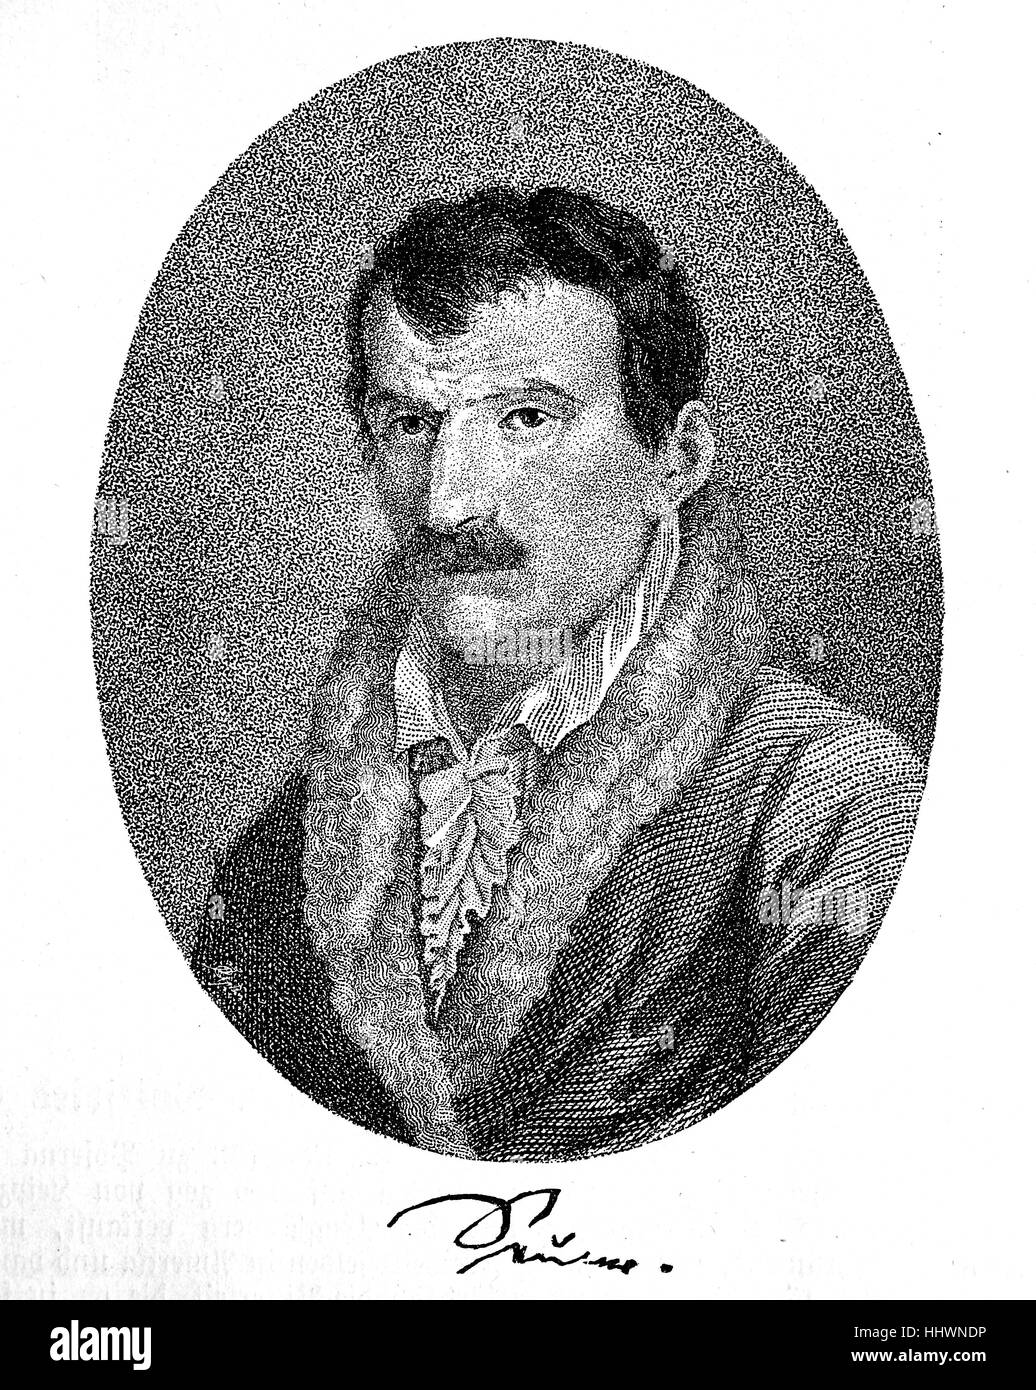 Johann Gottfried Seume war 29. Januar 1763 - 13. Juni 1810, ein deutscher Autor, Geschichtsbild oder Illustration, veröffentlicht 1890, digital verbessert Stockfoto